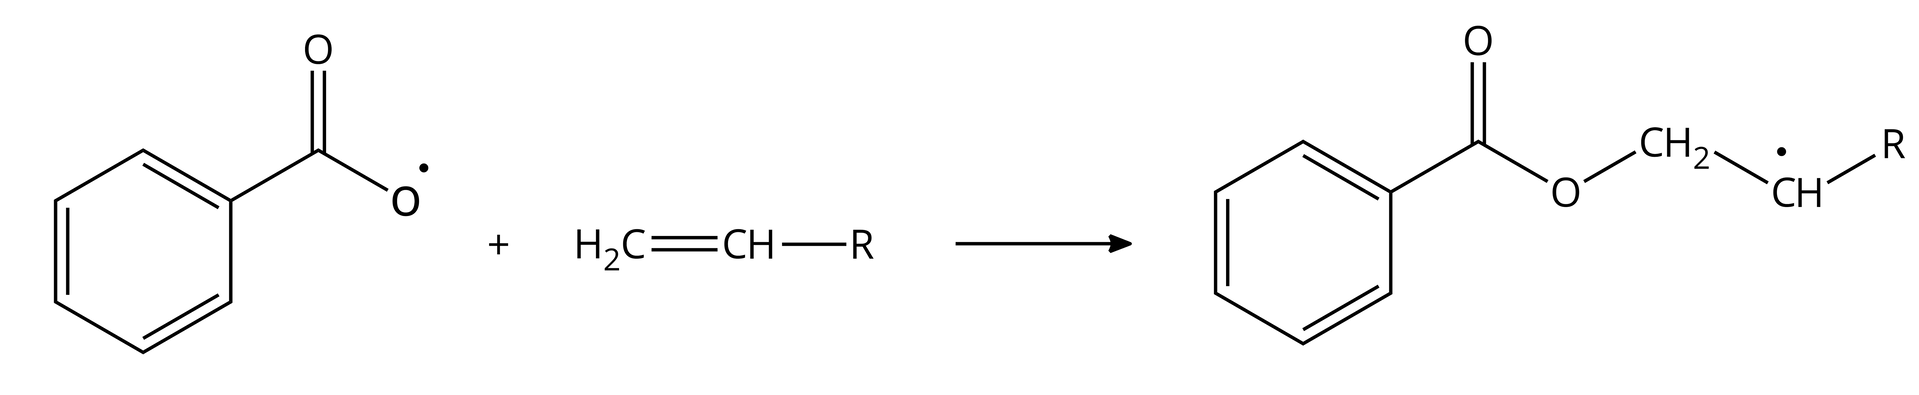 Ilustracja przedstawia otrzymywanie rodnika startowego. Po lewej stronie jedna cząsteczka rodnika benzoilowego budowa: sześcioczłonowy pierścień aromatyczny połączony z atomem węgla, tworzącym wiązanie podwójne z jednym atomem tlenu i wiązanie pojedyncze z drugim atomem tlenu, który posiada niesparowany elektron. Reaguje z jedną cząsteczką alkenu zbudowaną z grupy metylenowej połączonej za pomocą wiązania podwójnego z grupą CH podstawioną grupą R. W wyniku tej reakcji powstaje następujący rodnik: sześcioczłonowy pierścień aromatyczny połączony z atomem węgla, tworzącym wiązanie podwójne z jednym atomem tlenu i wiązanie pojedyncze z drugim atomem tlenu, który tworzy wiązanie z łańcuchem: grupa metylenowa wiązanie pojedyncze grupa  CH posiadającą niesparowany elektron w postaci kropki i podstawioną grupą R. 